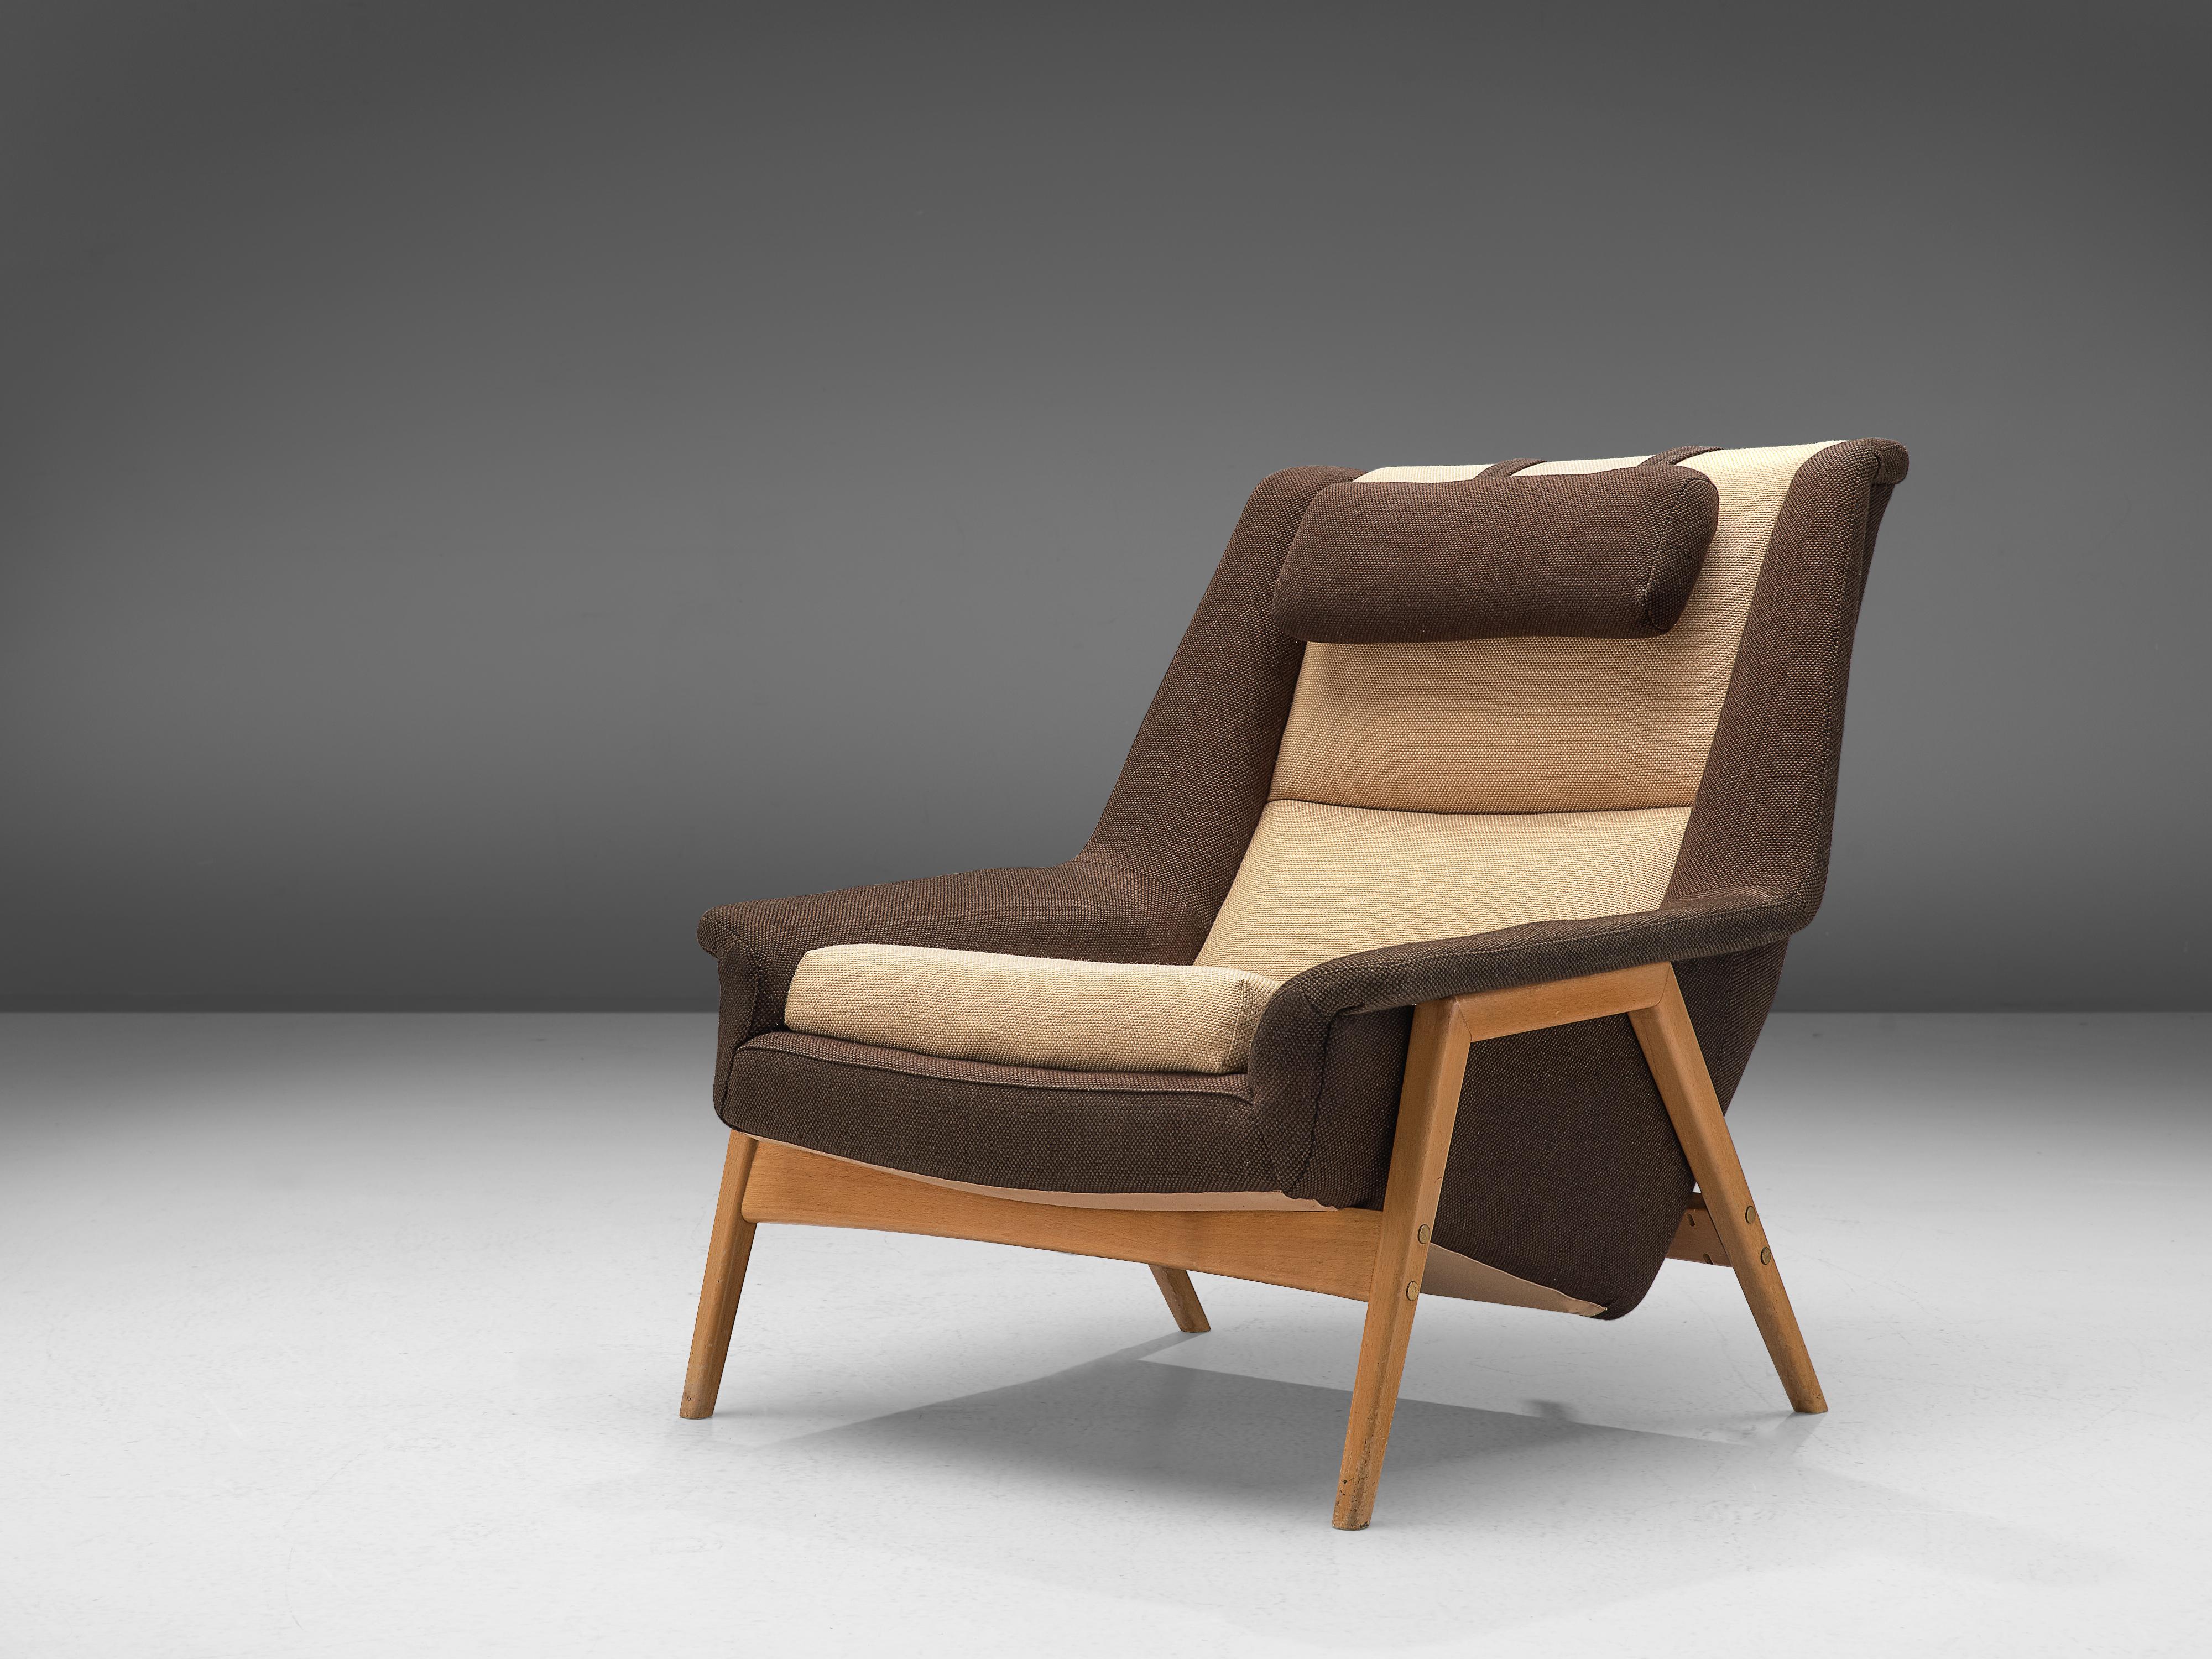 Folke Ohlsson pour Fritz Hansen, chaise longue, tissu, bois, Danemark, vers 1960.

Cette chaise créée par Folke Ohlsson pour Fritz Hansen est conçue pour atteindre un niveau de confort ultime, comme le montre clairement son design. Cette chaise